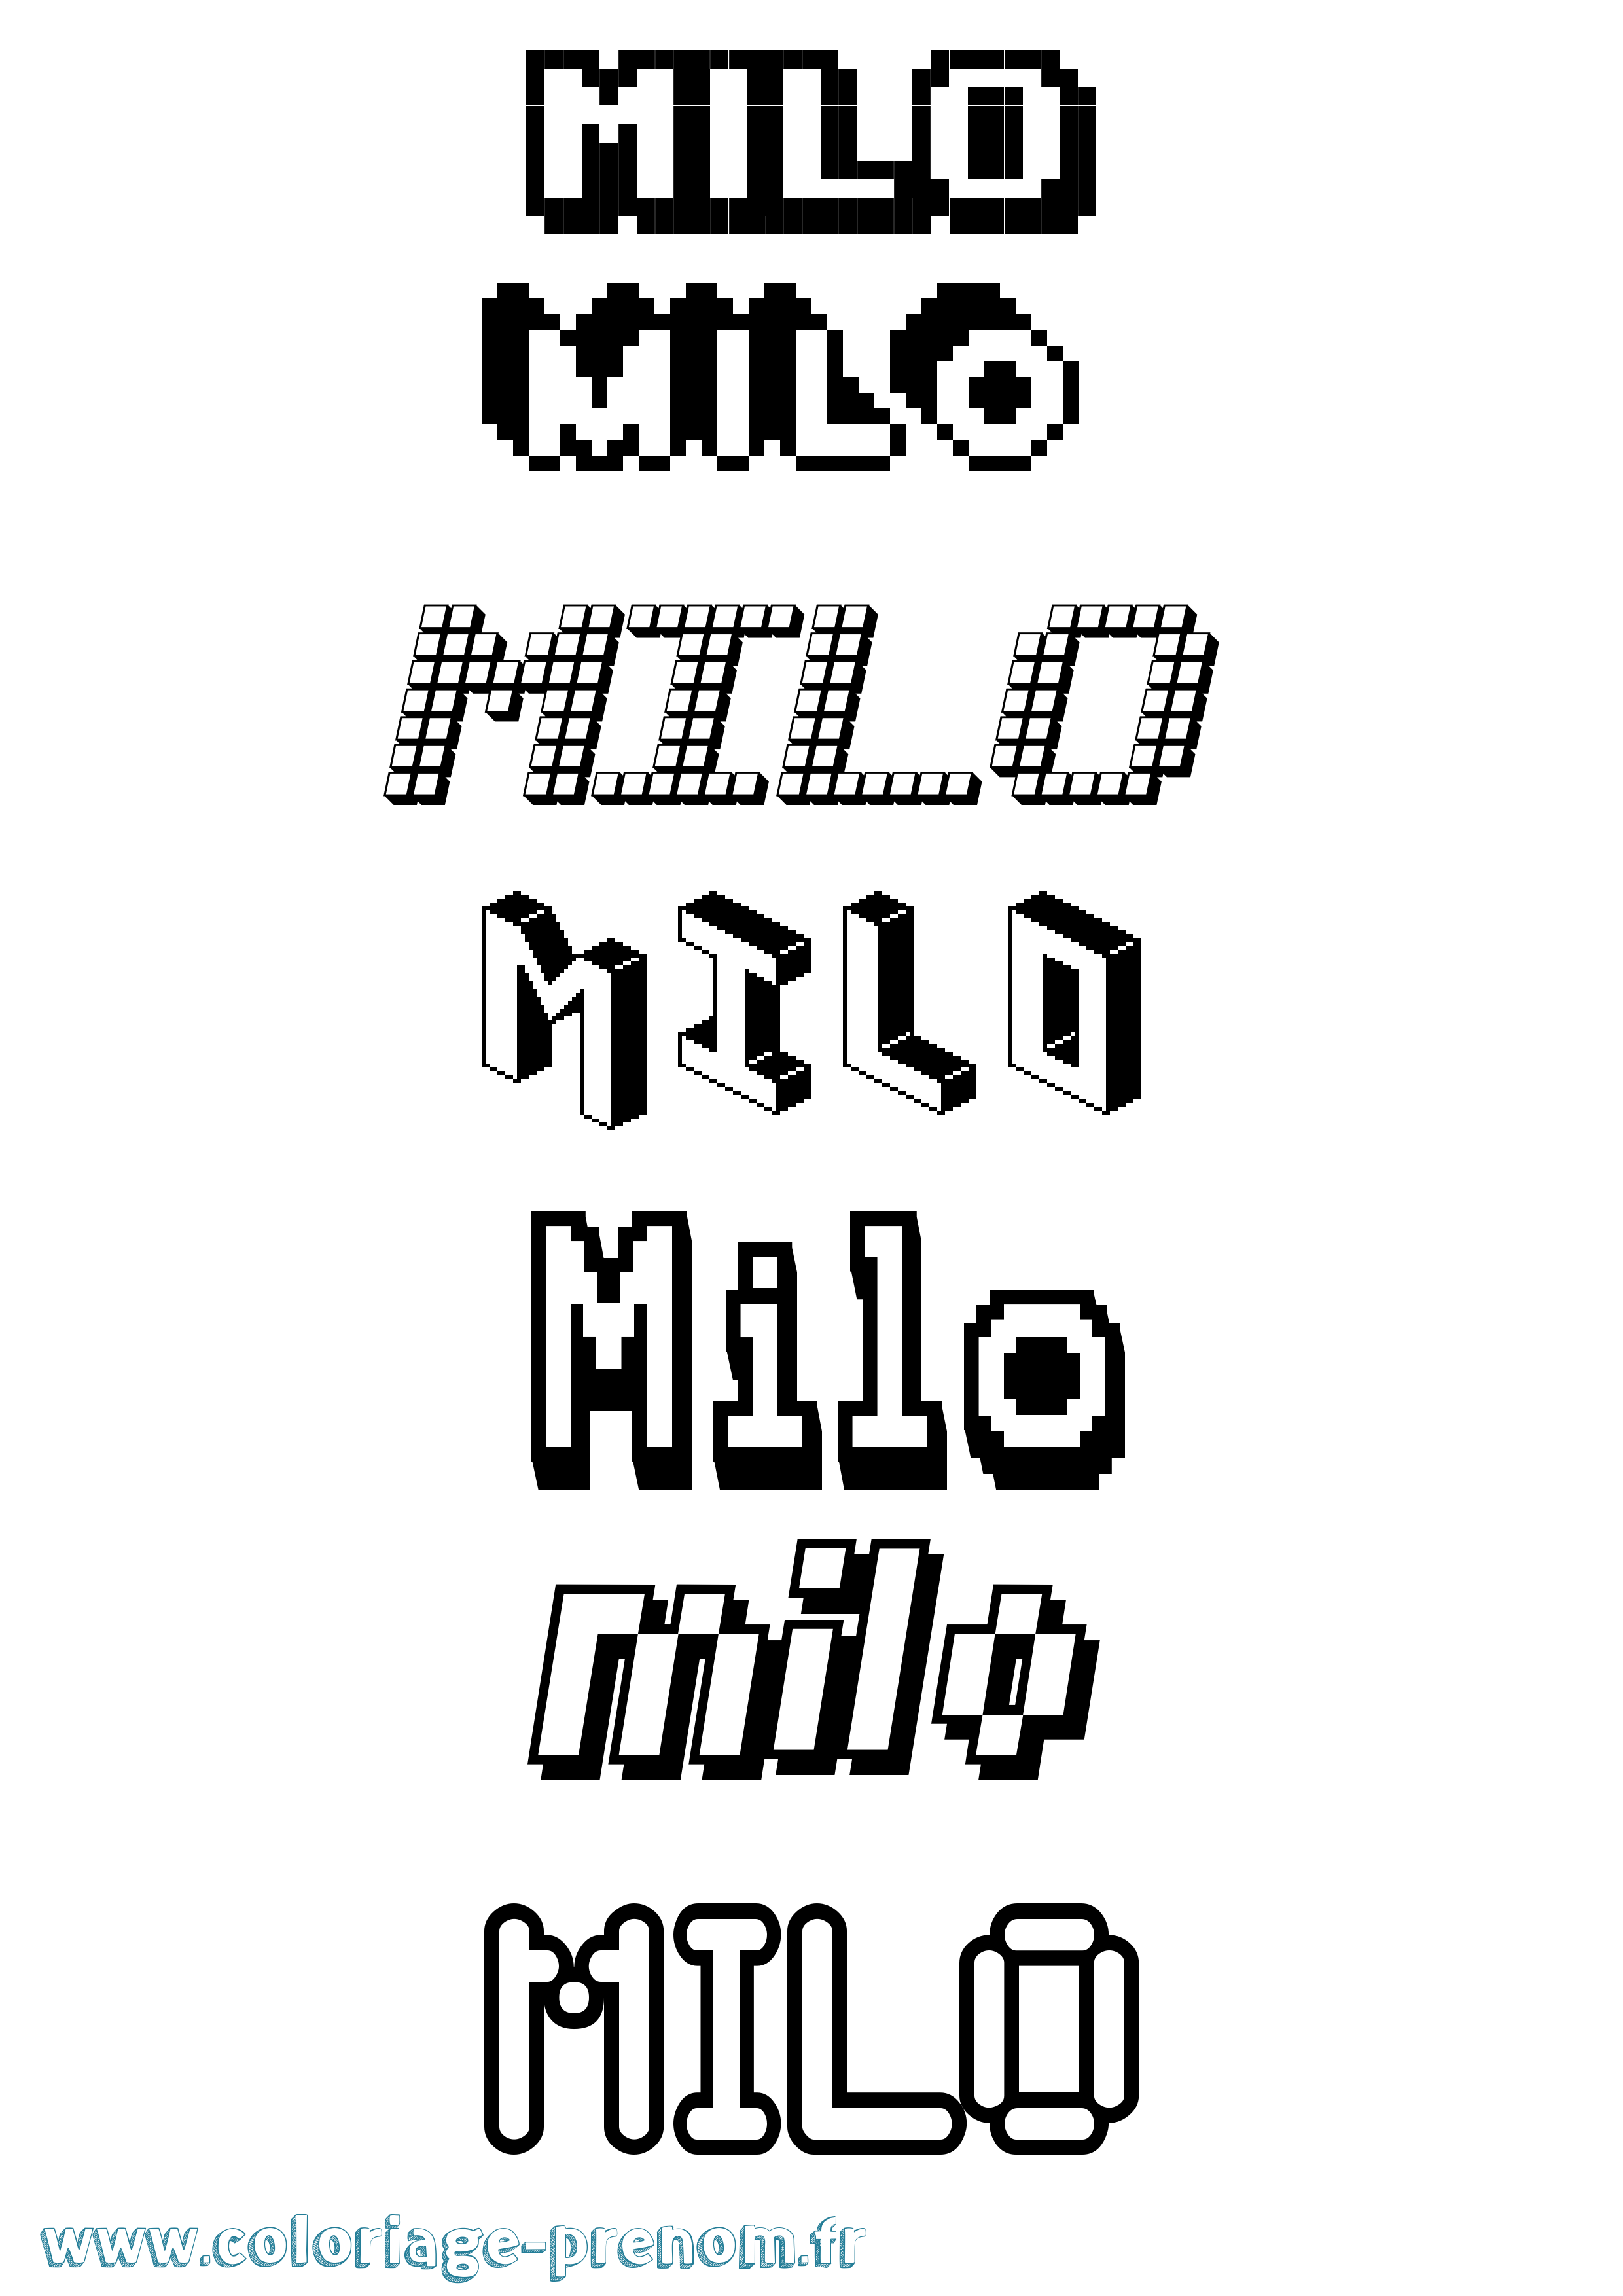 Coloriage prénom Milo Pixel